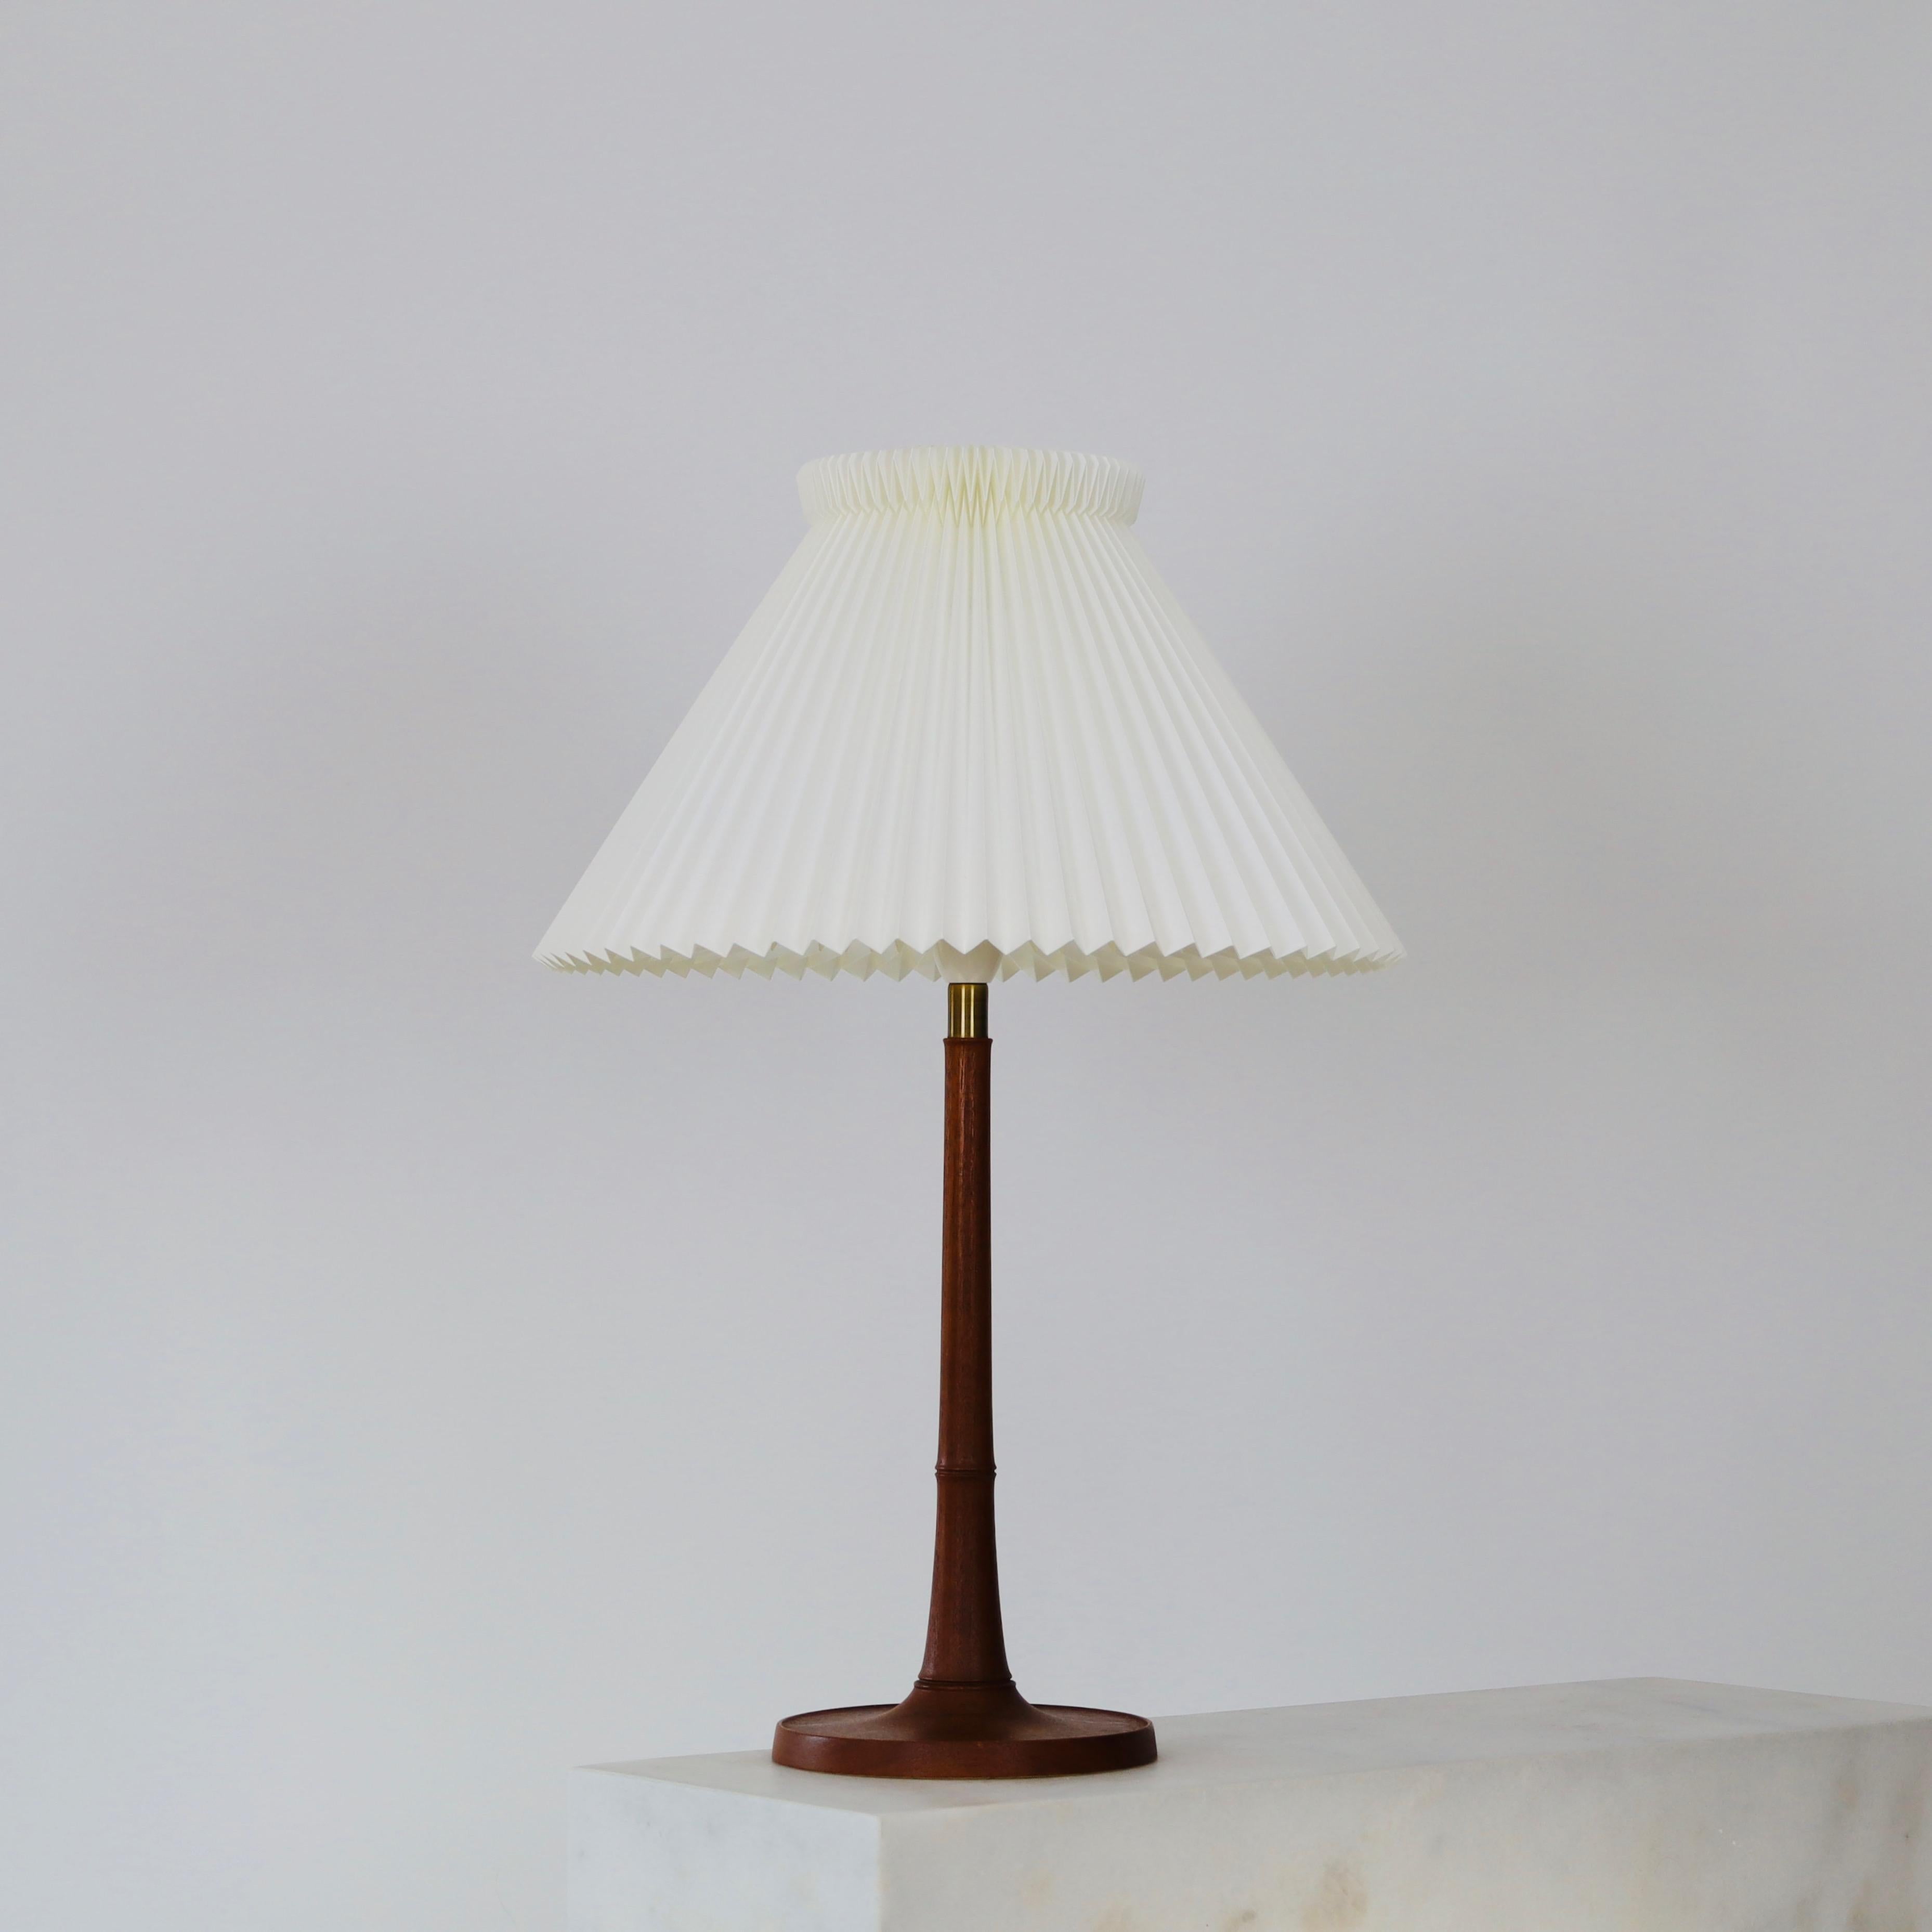 Eine Tischlampe aus Eichenholz in ausgezeichnetem Vintage-Zustand, entworfen von Esben Klint im Jahr 1957 für Le Klint. Er hat eine schöne dunkle Patina und ist ein seltenes Stück für einen schönen Raum.  

* Eine Tischlampe aus dunklem Eichenholz